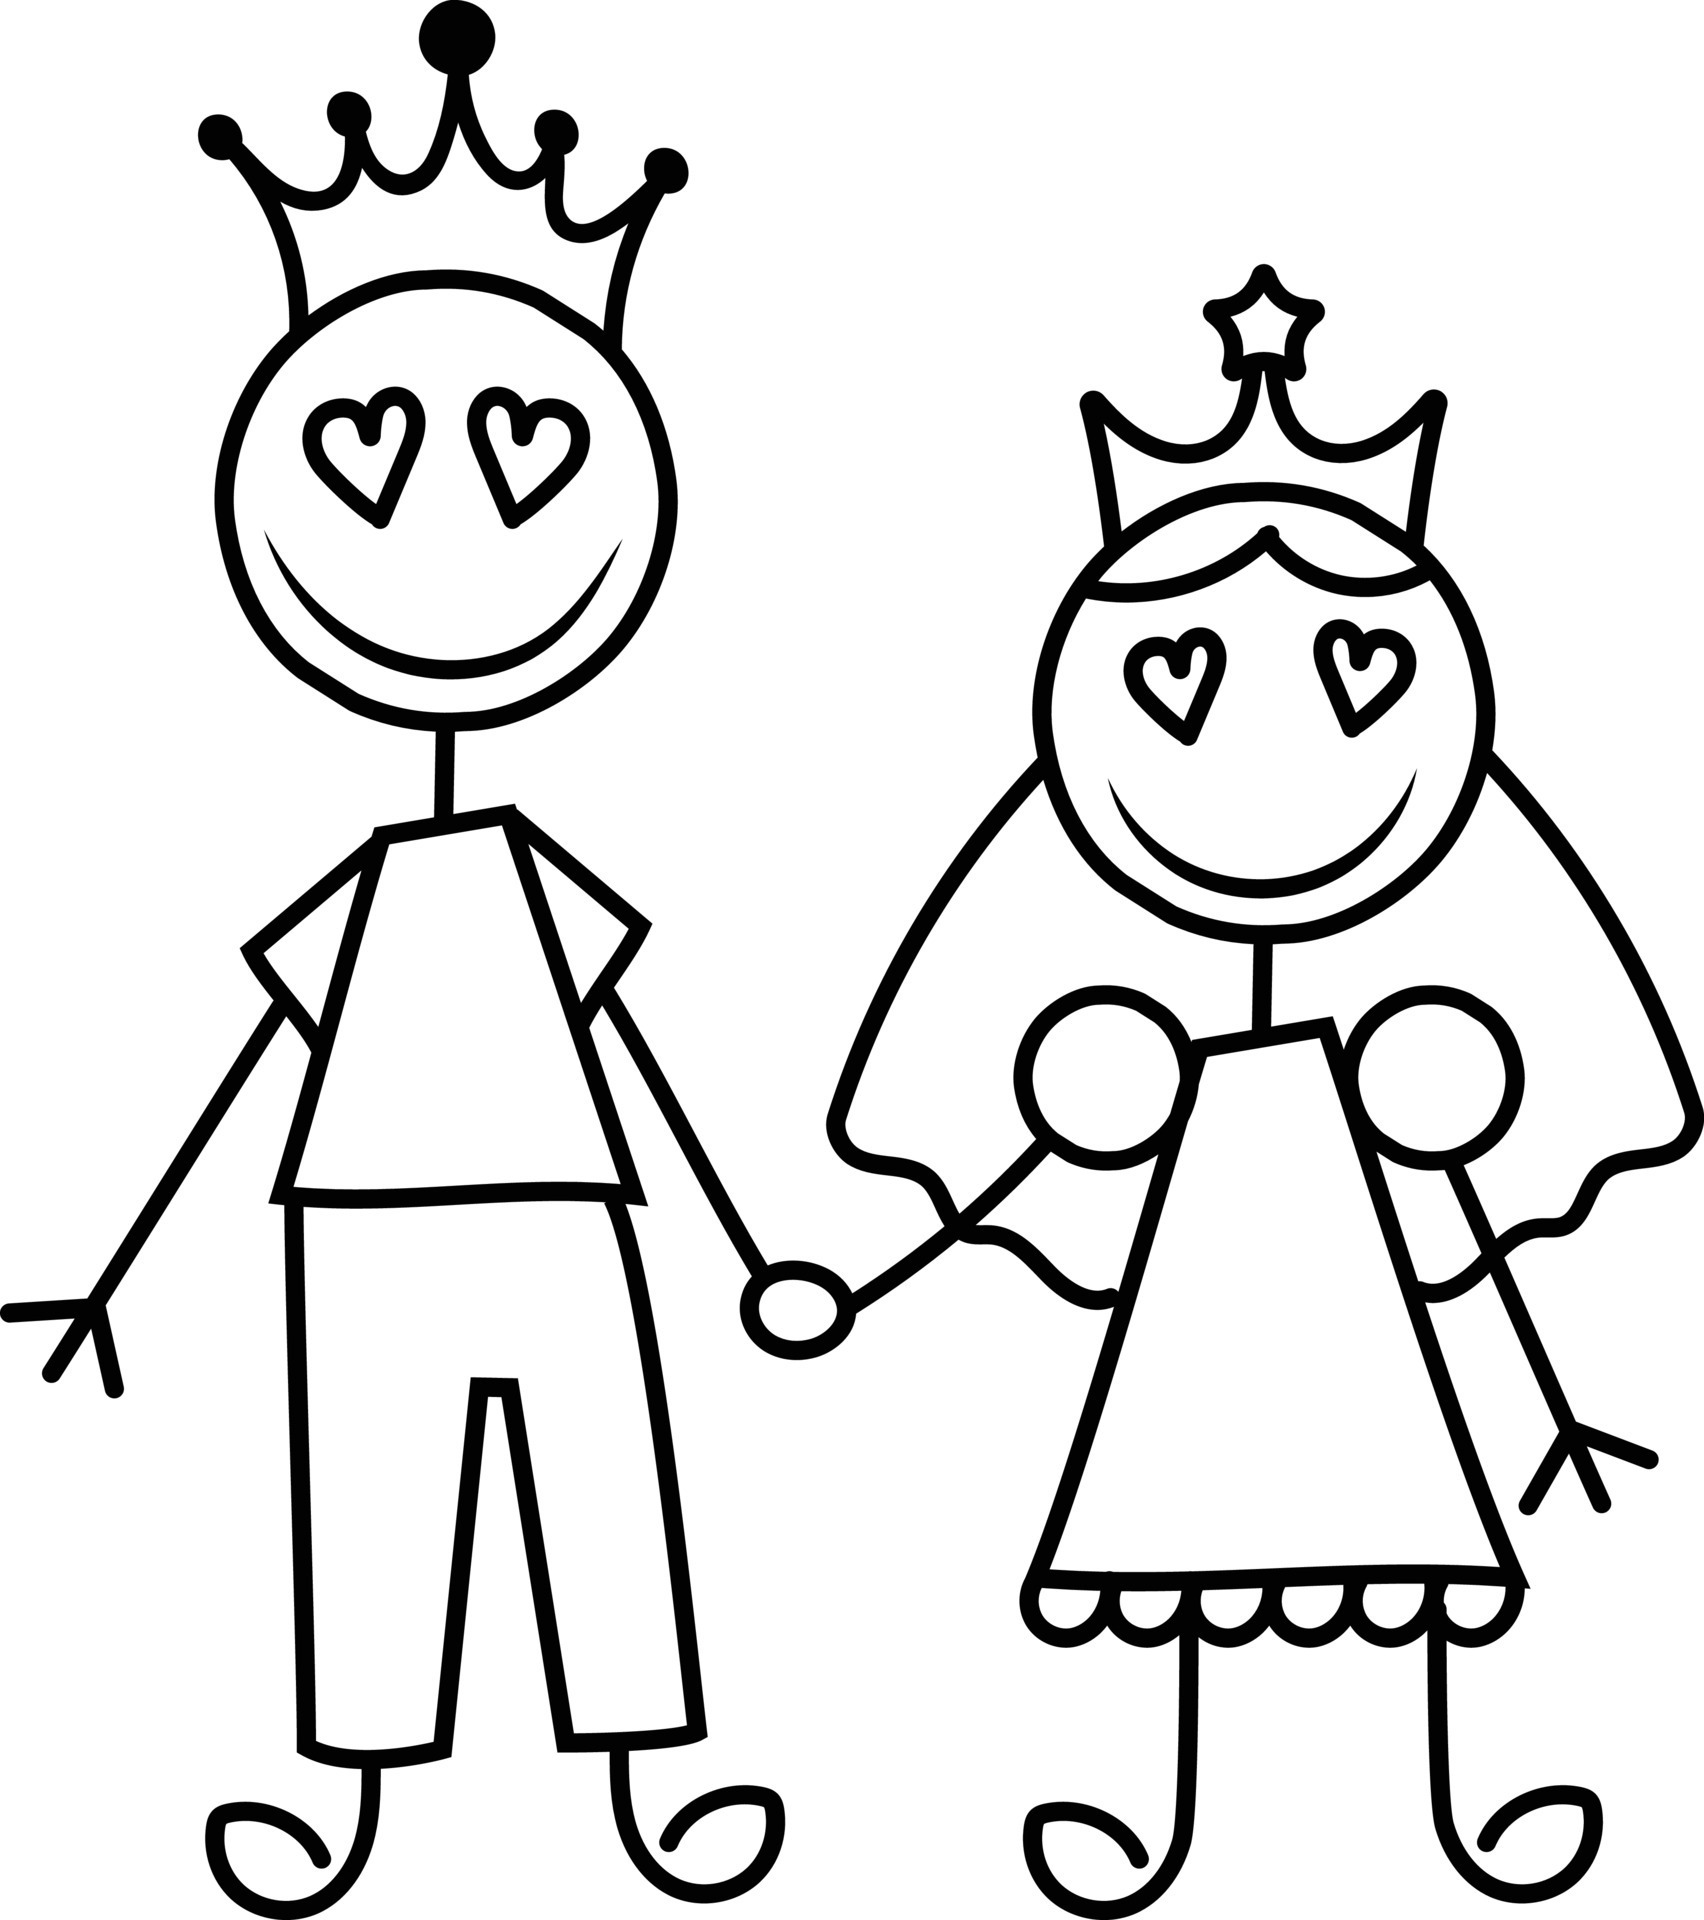 Premium Vector | Doodle crown line art king or queen sketch vector  illustration